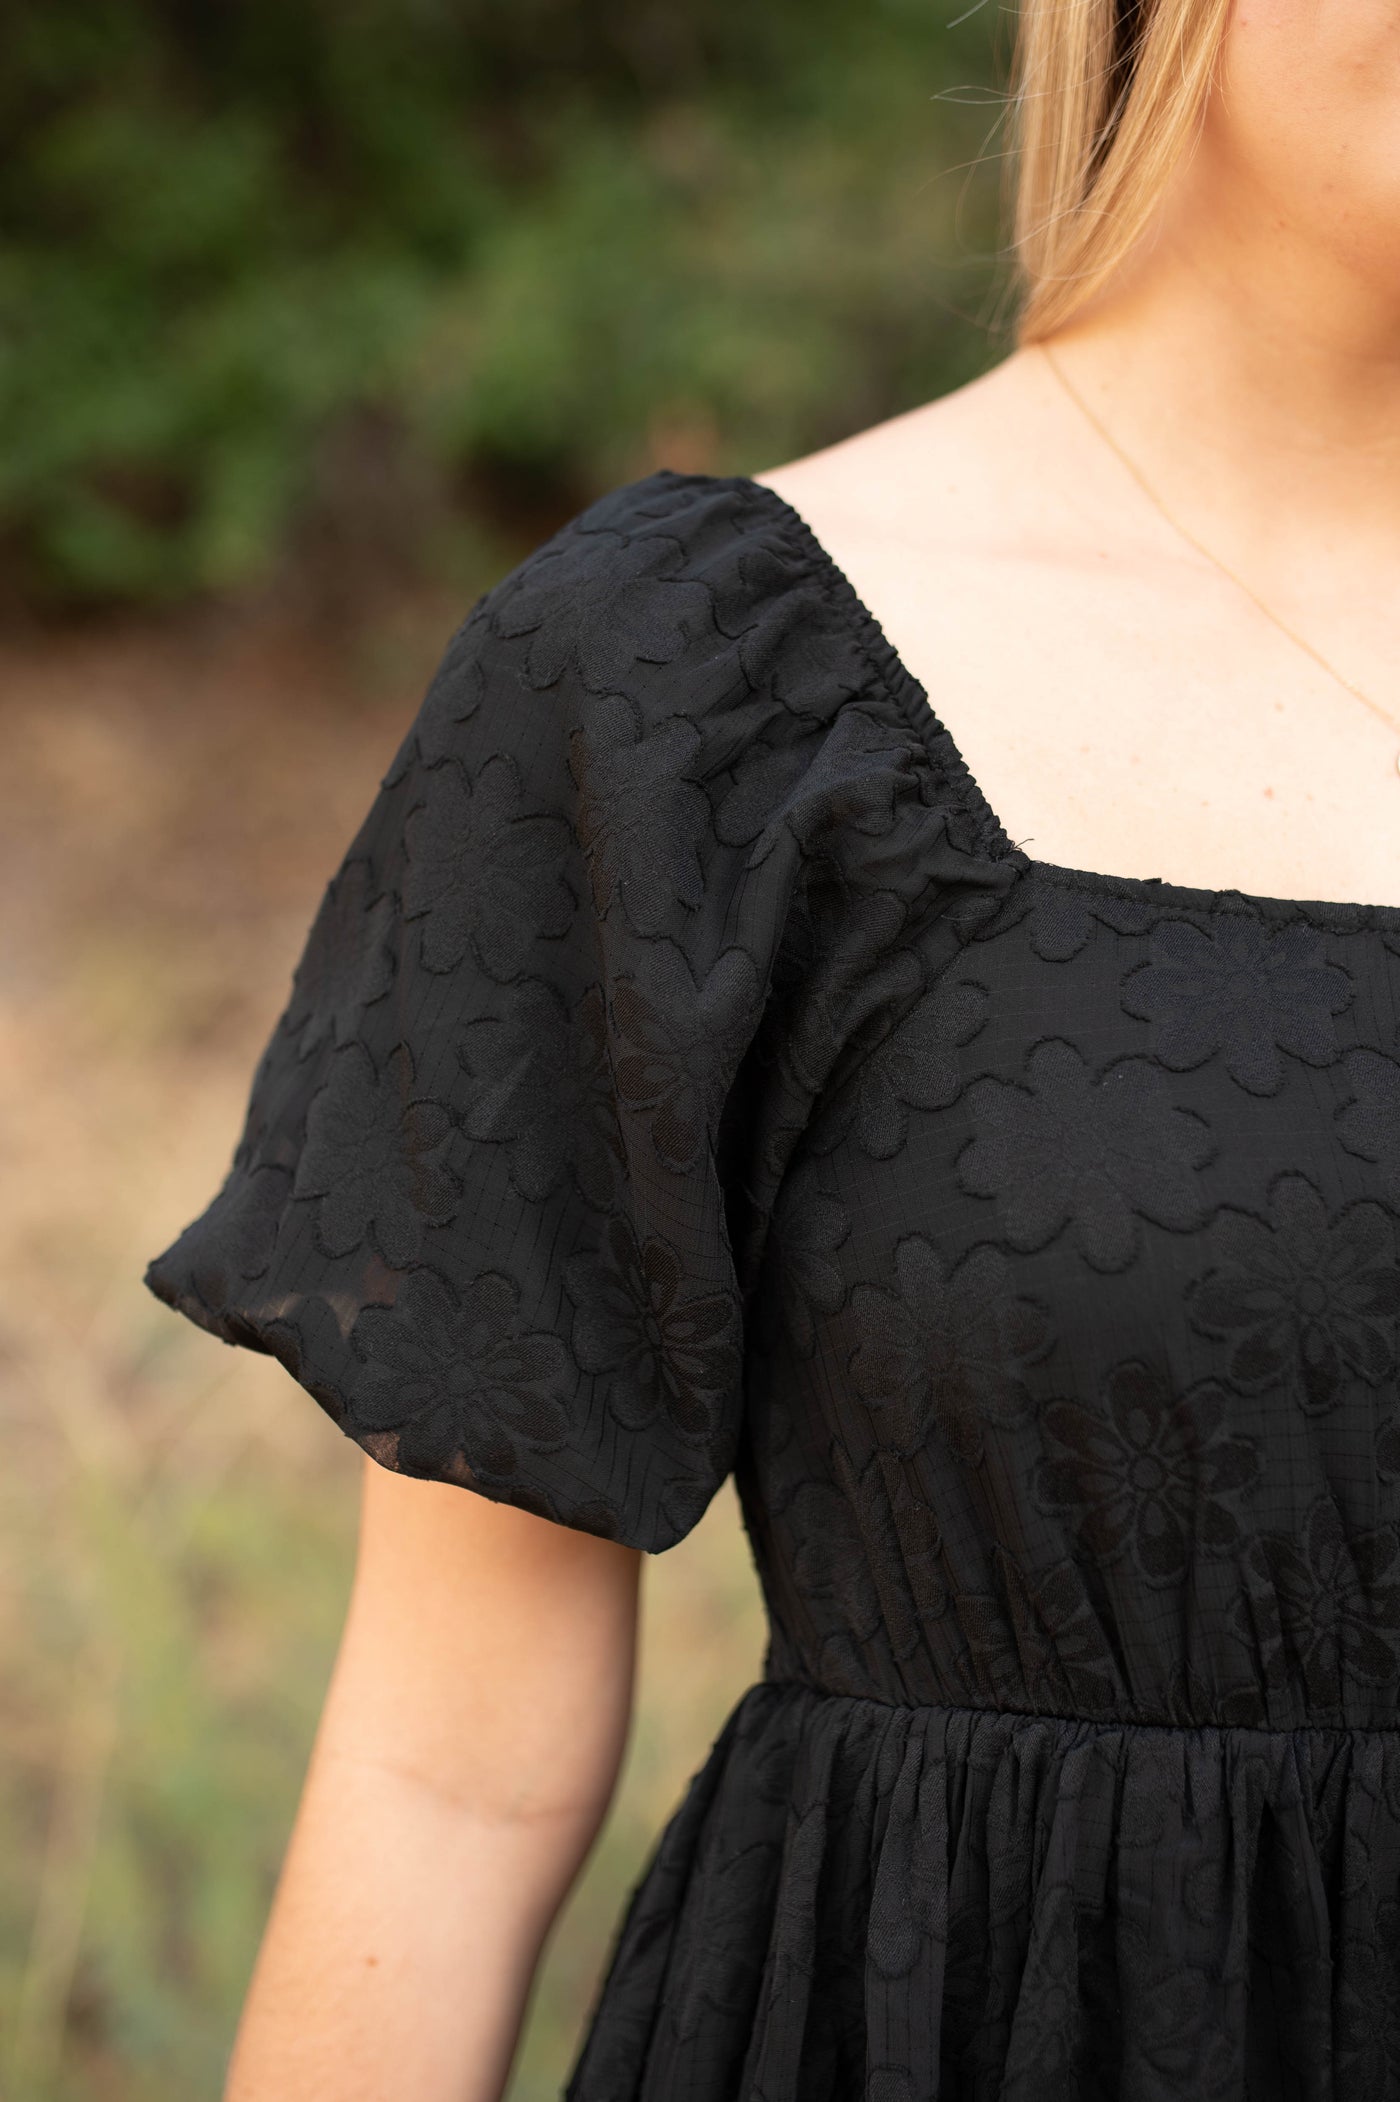 Square neckline of a black dress